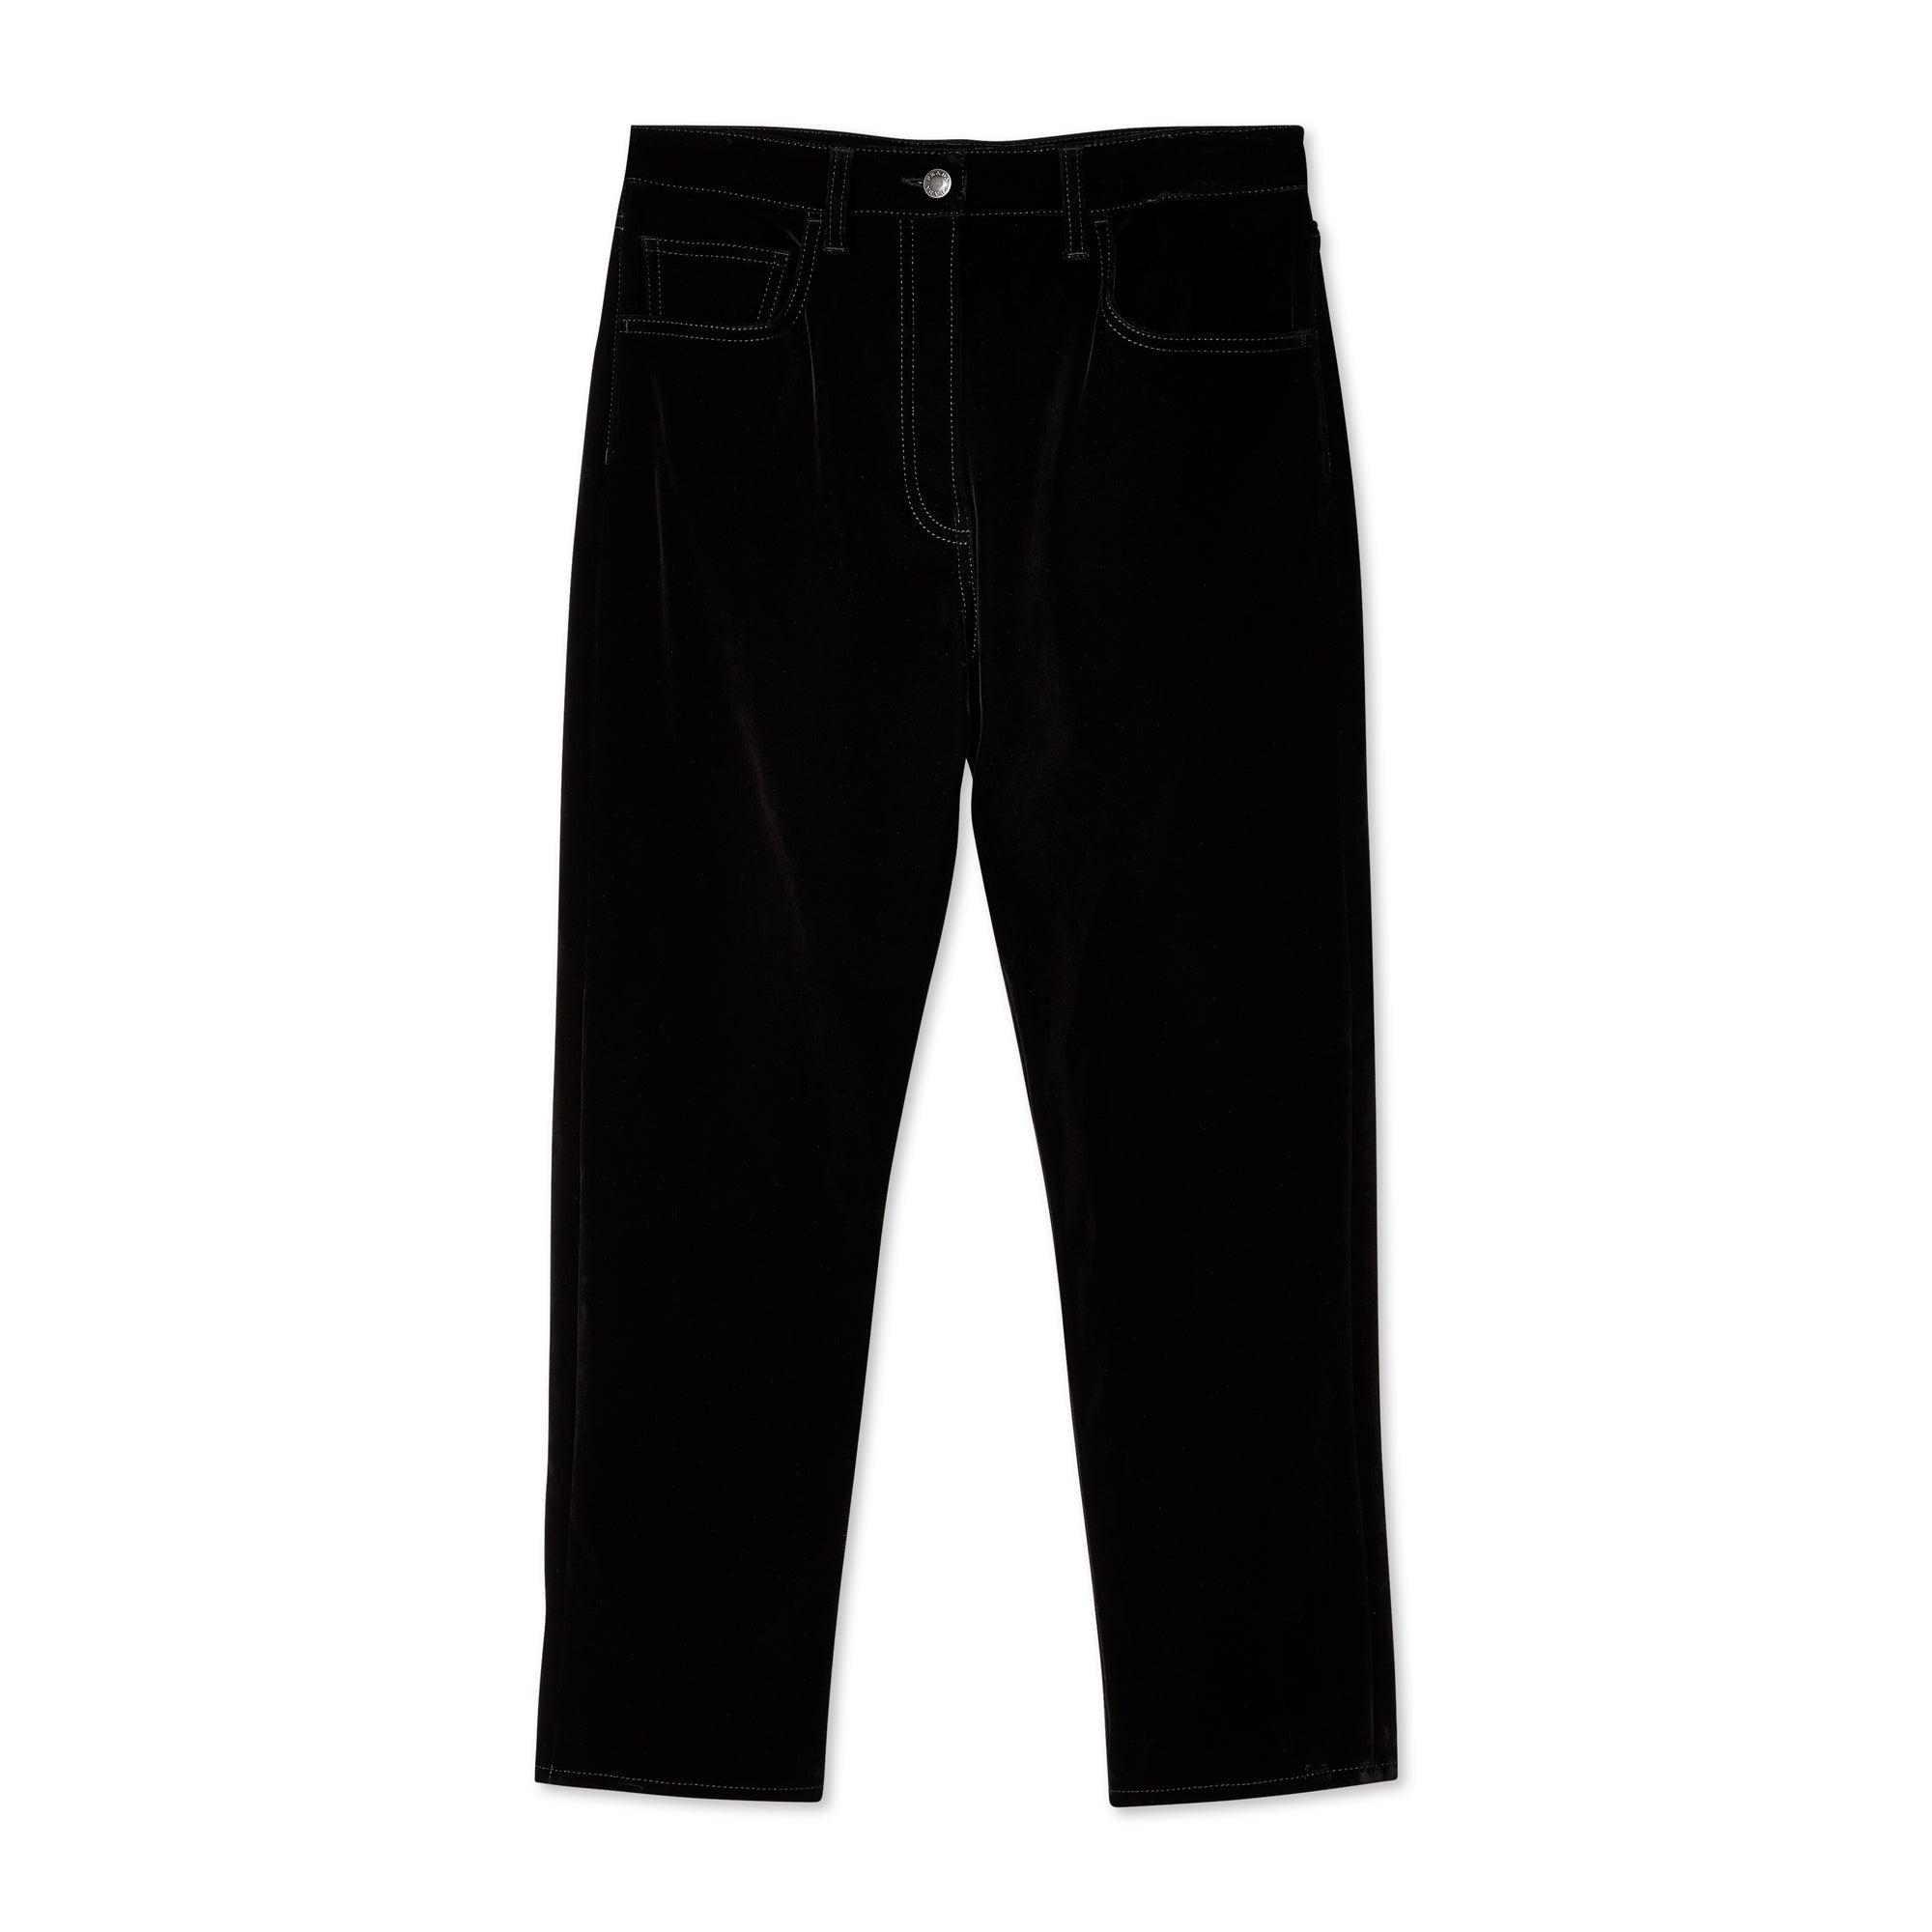 Prada - Women's Velvet Denim Jeans - (Black) view 1